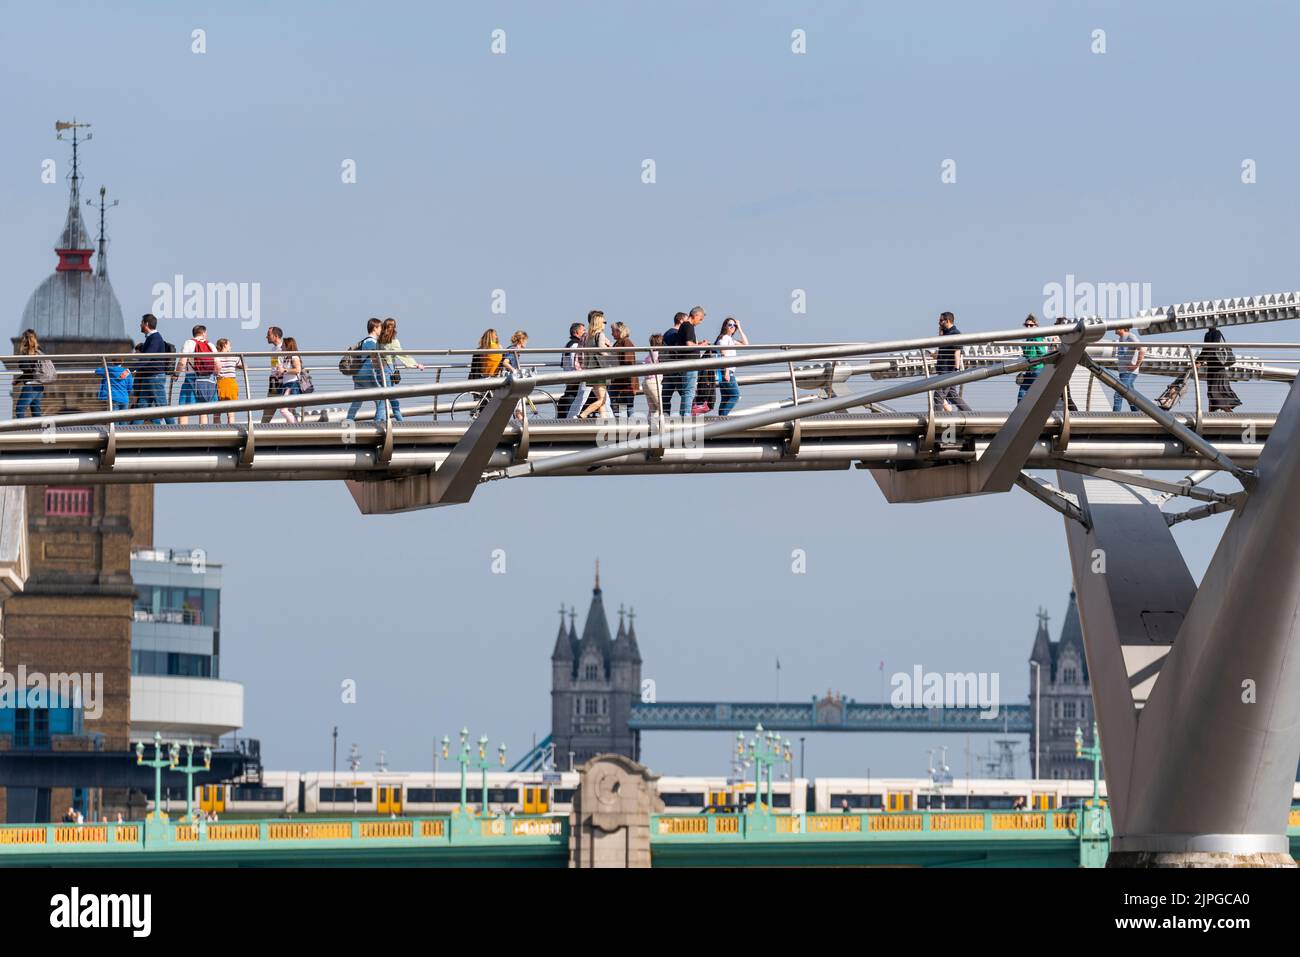 Gente cruzando el Puente del Milenio sobre el río Támesis, Londres, Reino Unido, frente al Tower Bridge. Gente, tren y puentes que cruzan el Támesis Foto de stock